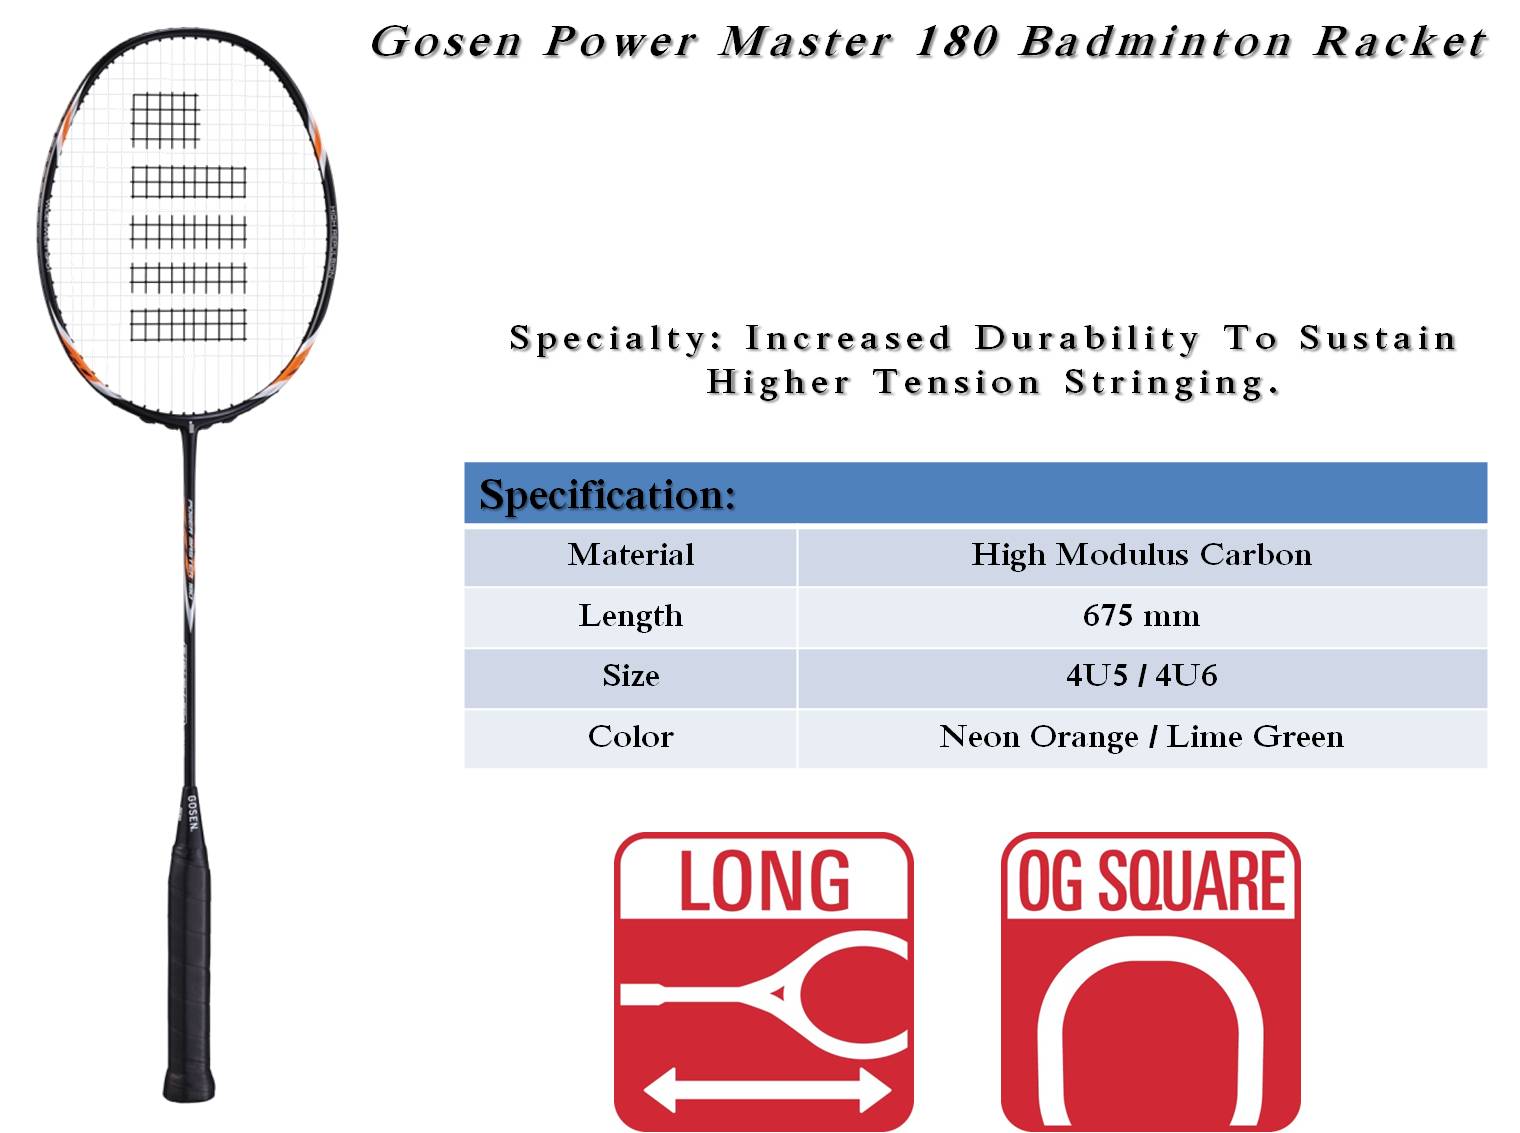 Gosem_Power_Master_180_Badminton_Racket_Khelmart